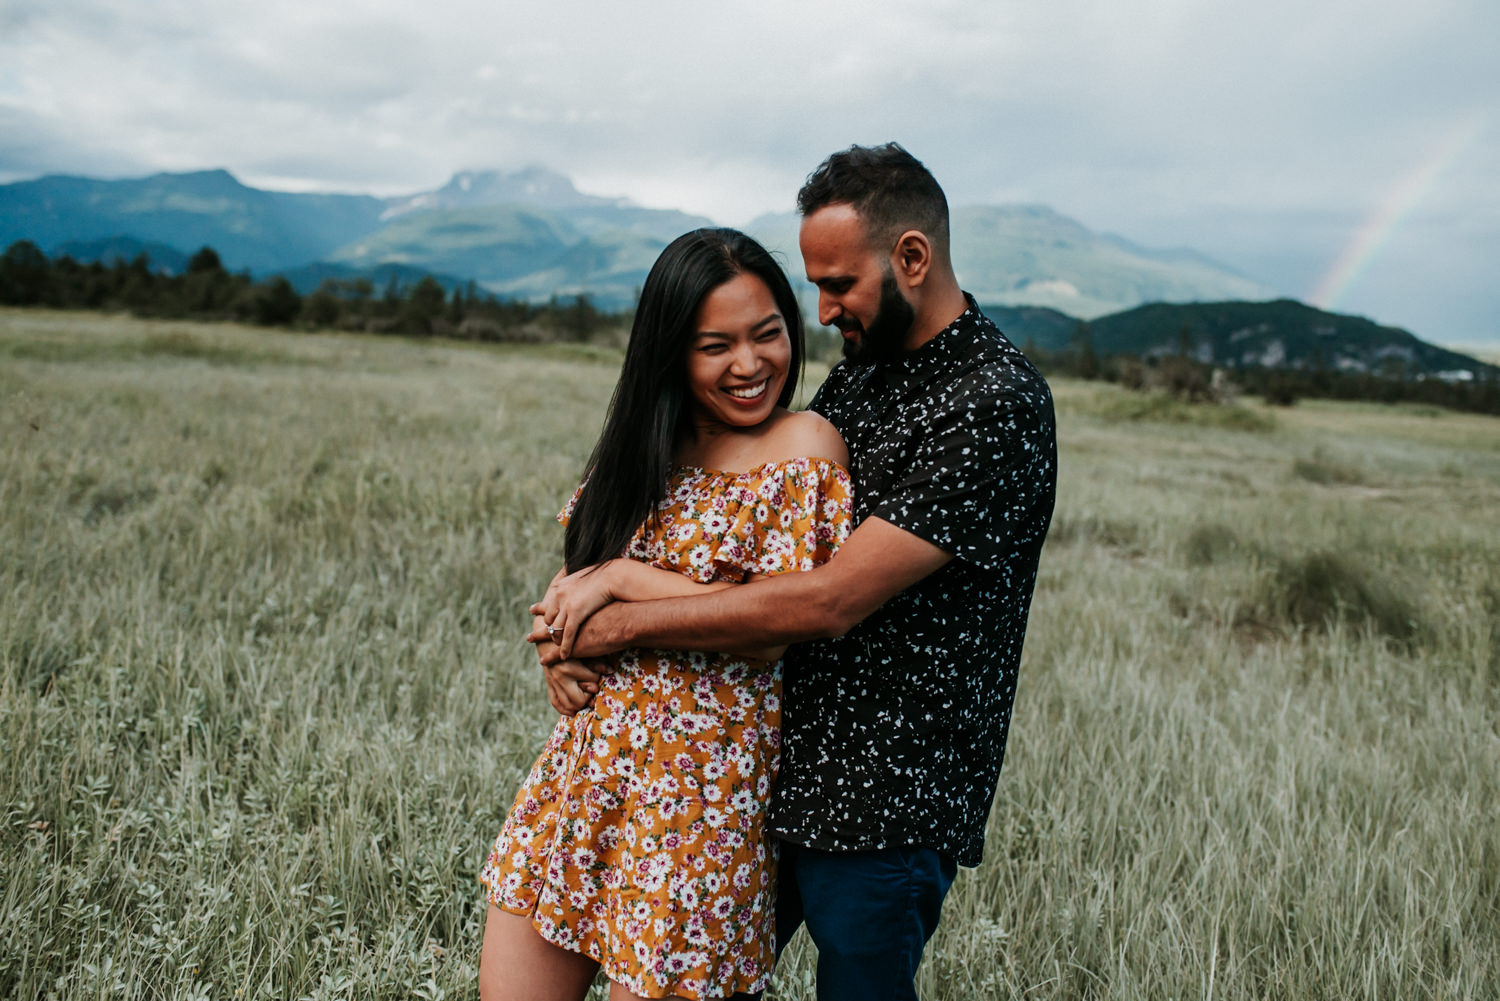 Squamish engagement photography, Squamish elopement locations, Squamish wedding venues, Squamish Wedding Photographer